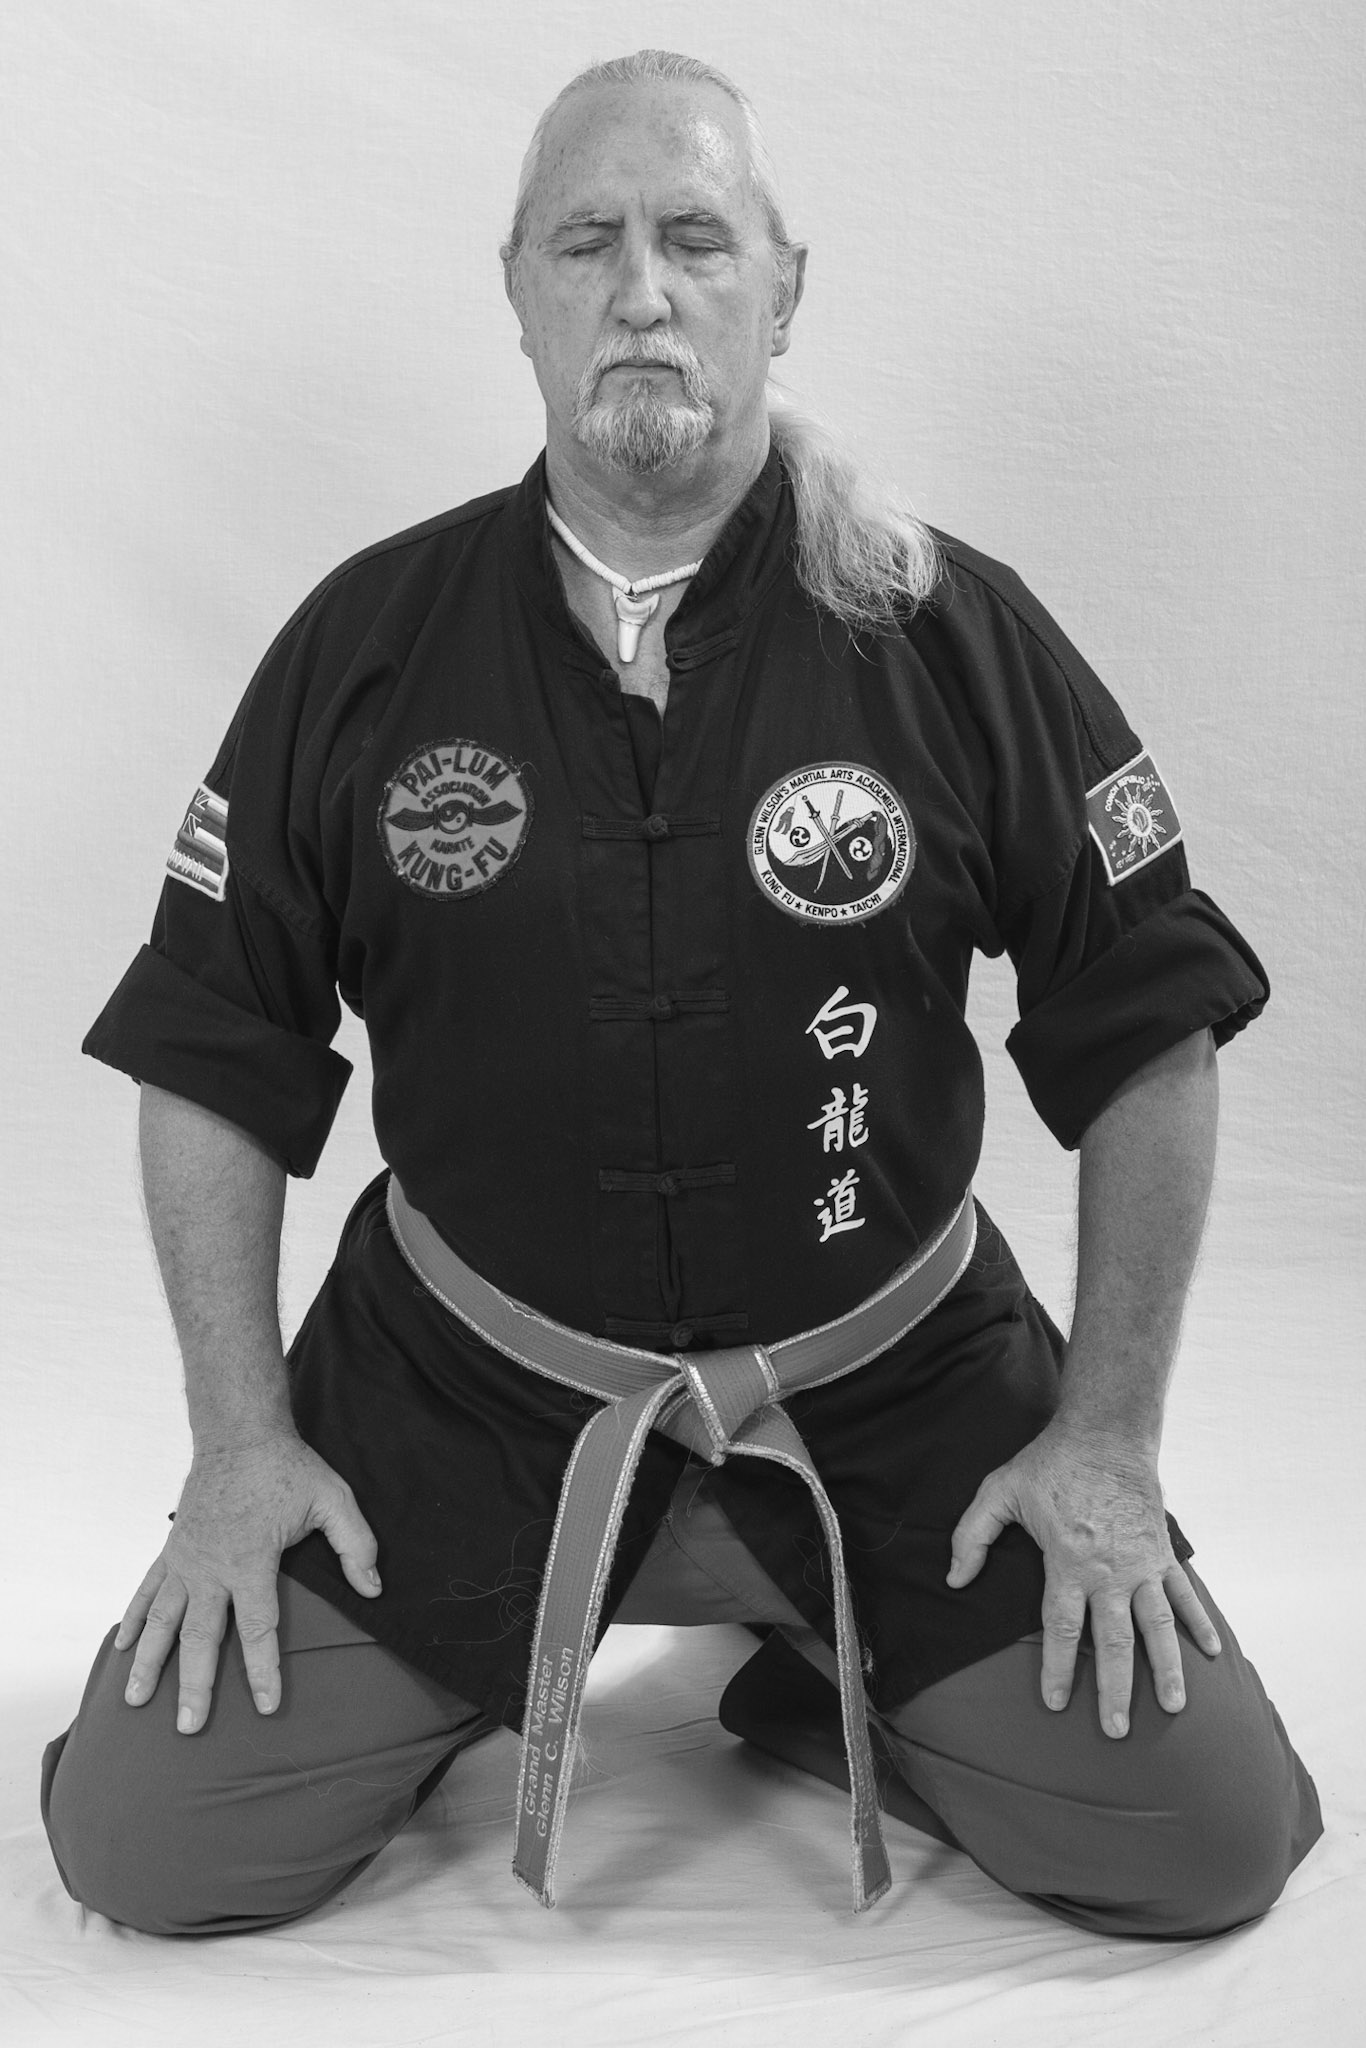 Grand Master Glenn C Wilson